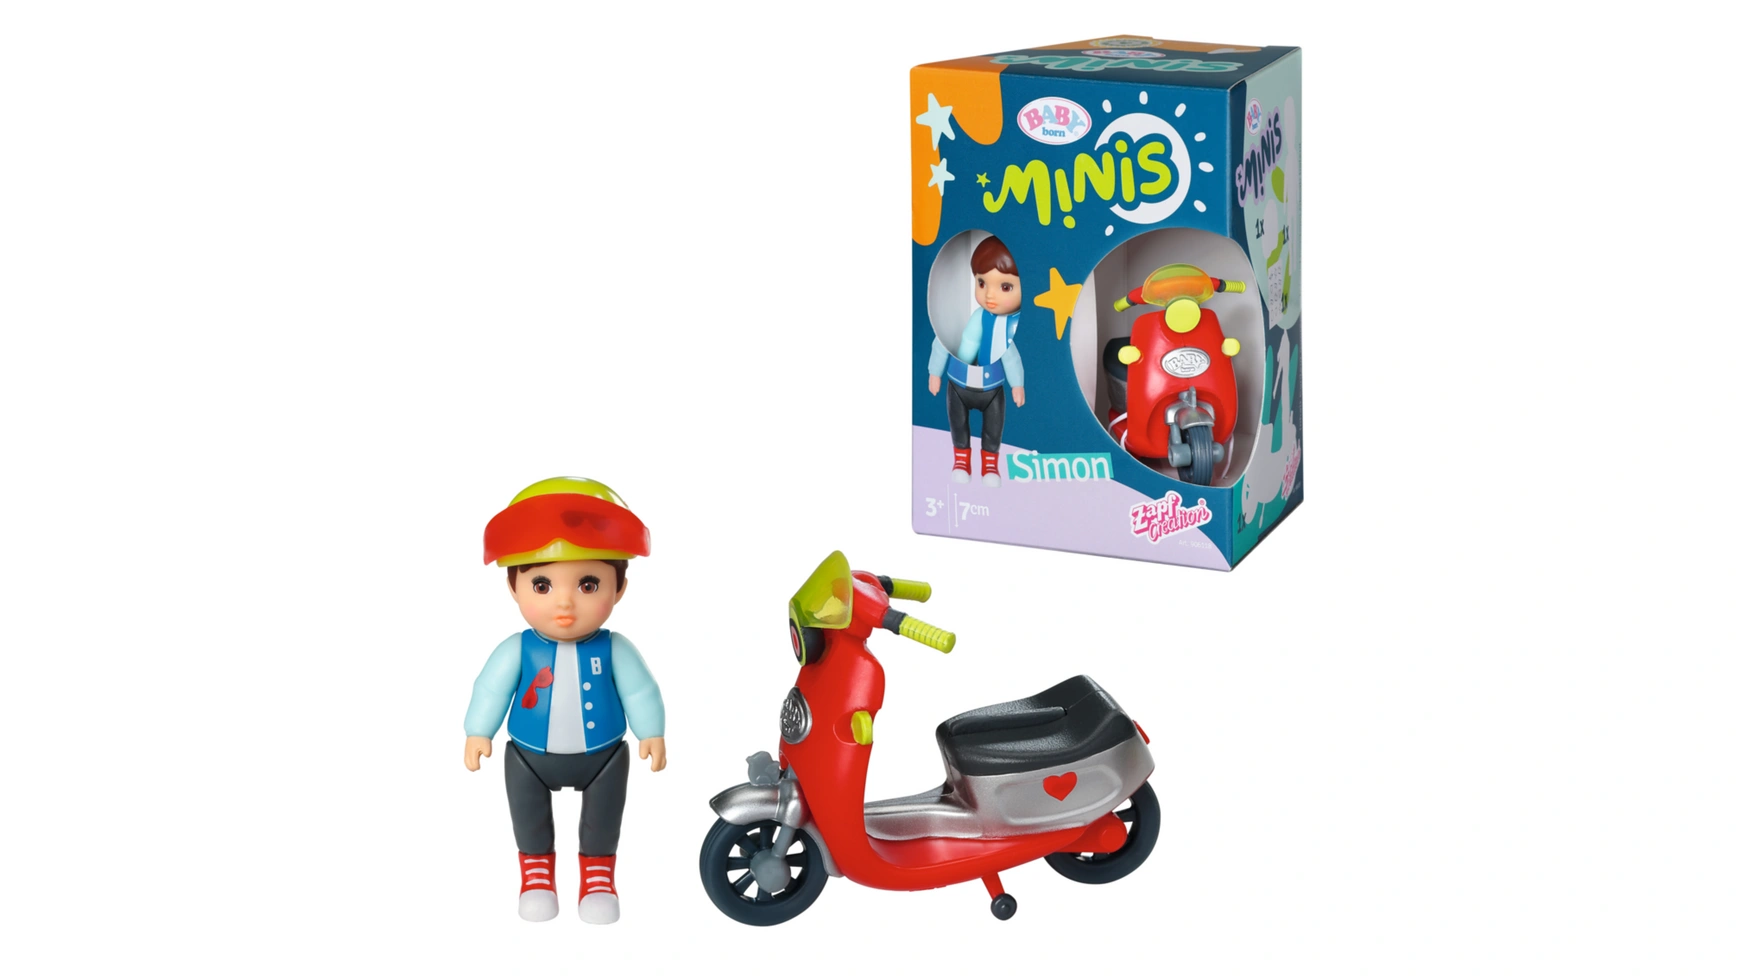 цена Baby Born Minis Playset Scooter, кукла Саймон высотой 7 см с самокатом и шлемом, 906118, Zapf Creation